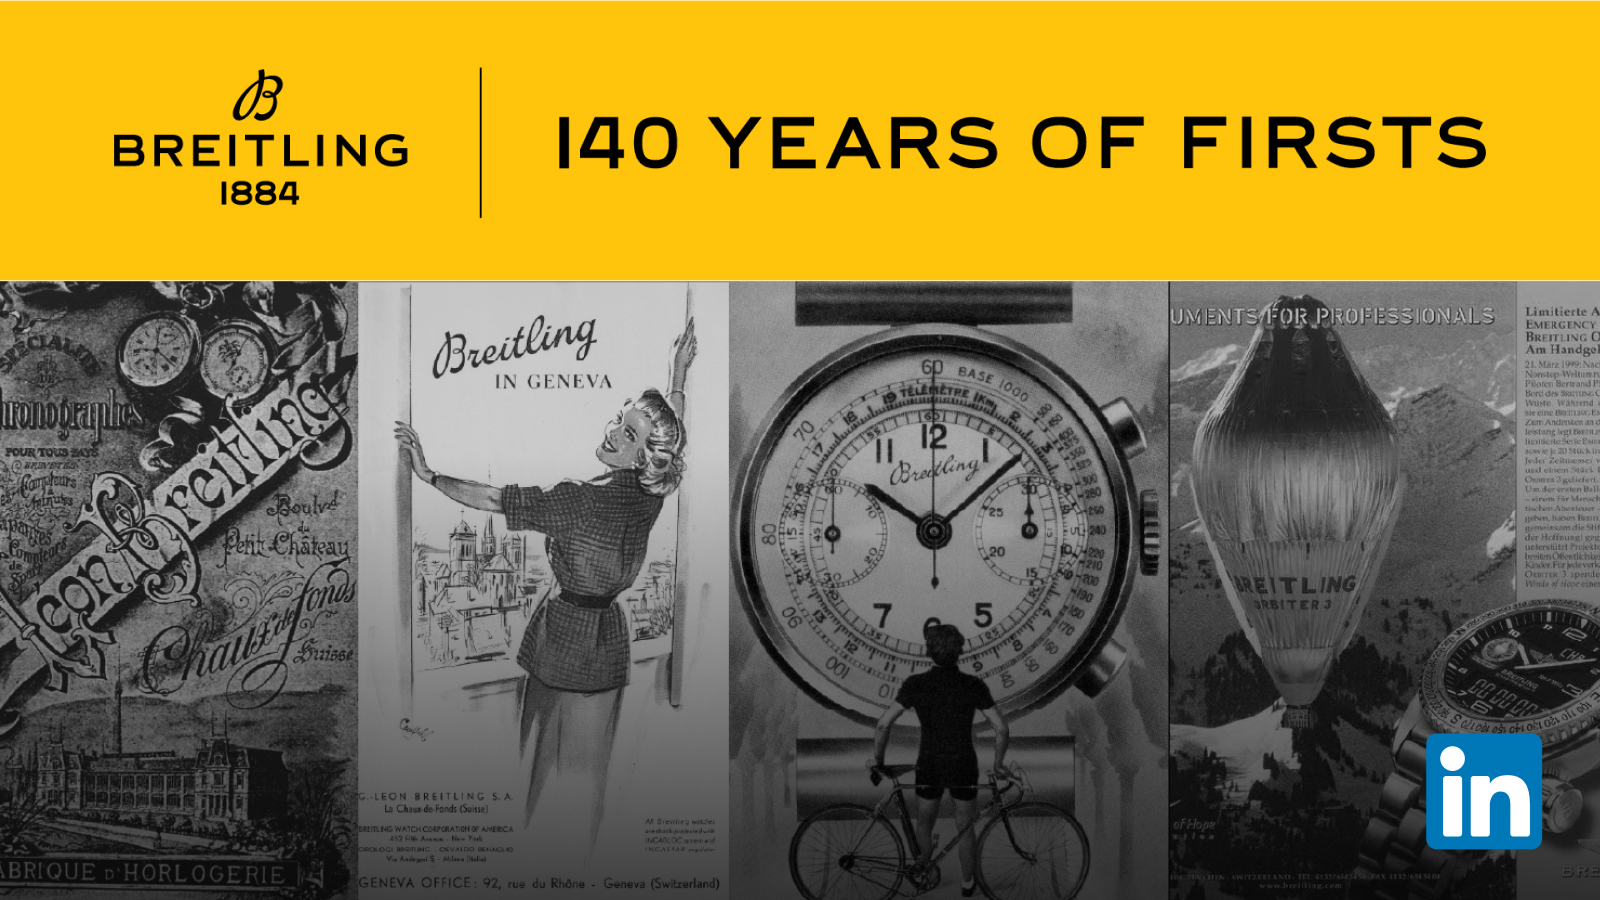 Folgen Sie Breitlings Reise auf LinkedIn und melden Sie sich für unseren Newsletter «Since 1884» an, um die gesamte Geschichte zum Erbe von Breitling zu erhalten.